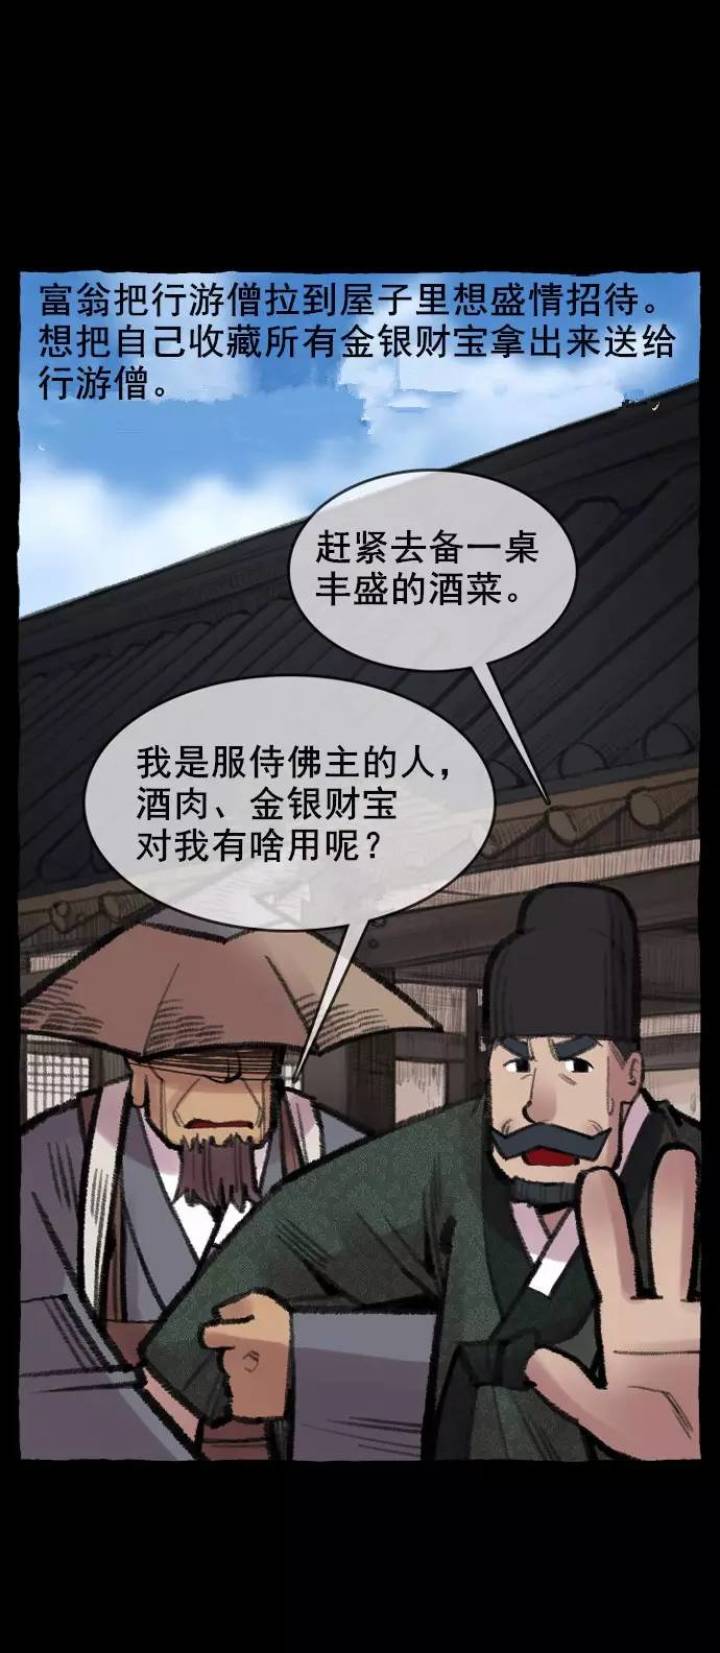 韩国漫画鬼村传说系列《五十童传》-黑白漫话